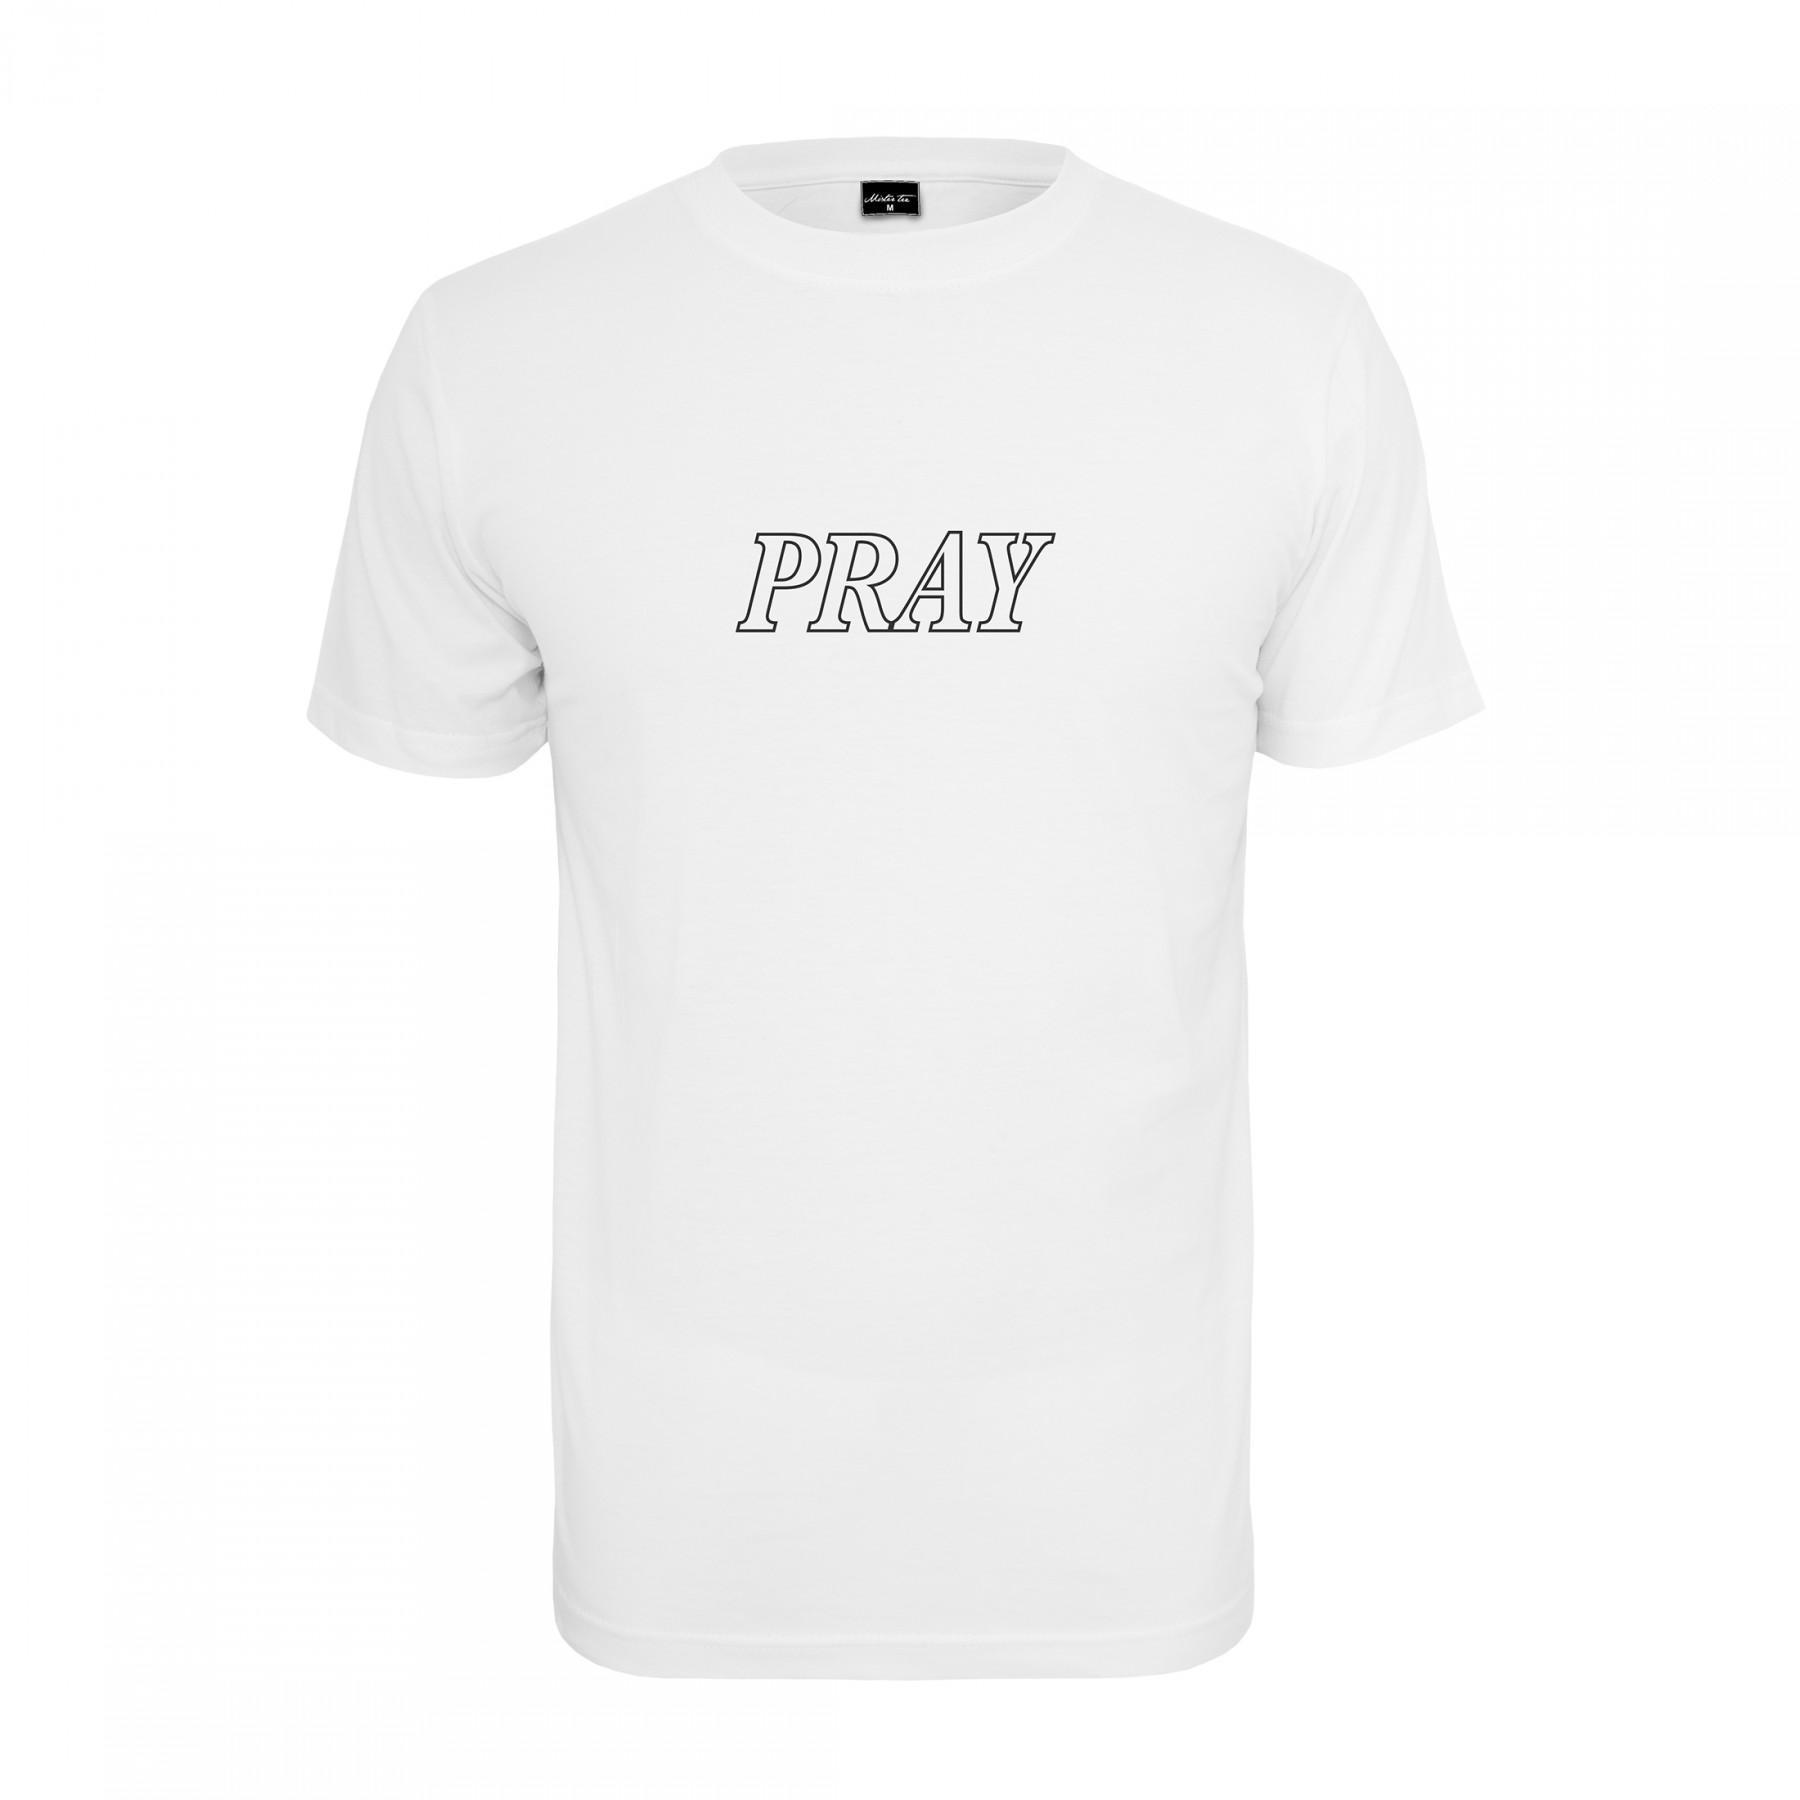 T-shirt Mister Tee pray hand